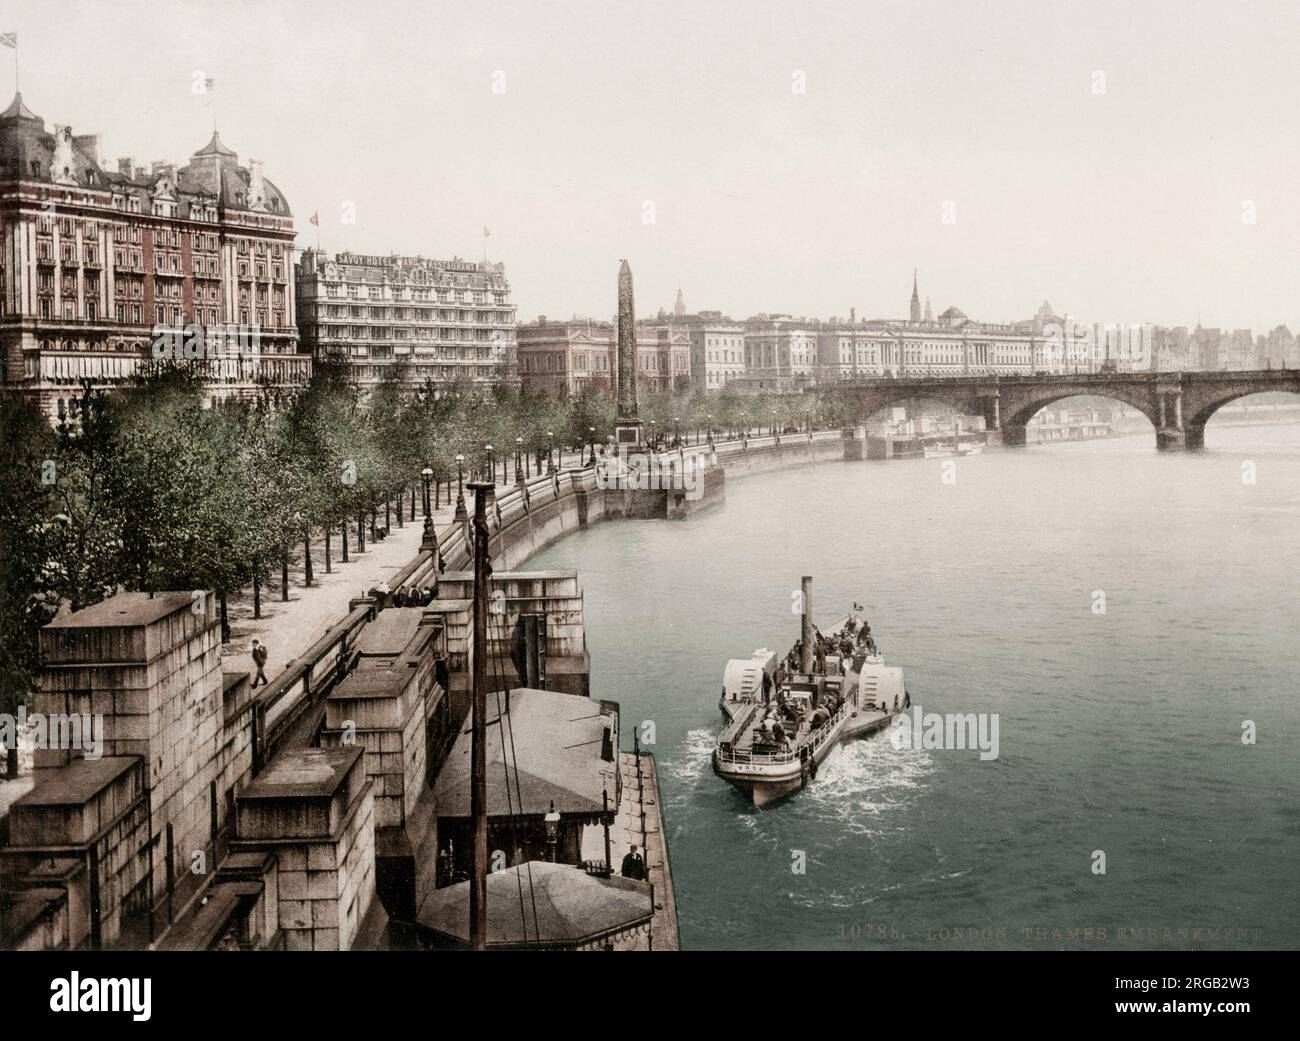 Photographie vintage du XIXe siècle : bateau le long du quai de la Tamise, Londres. Banque D'Images